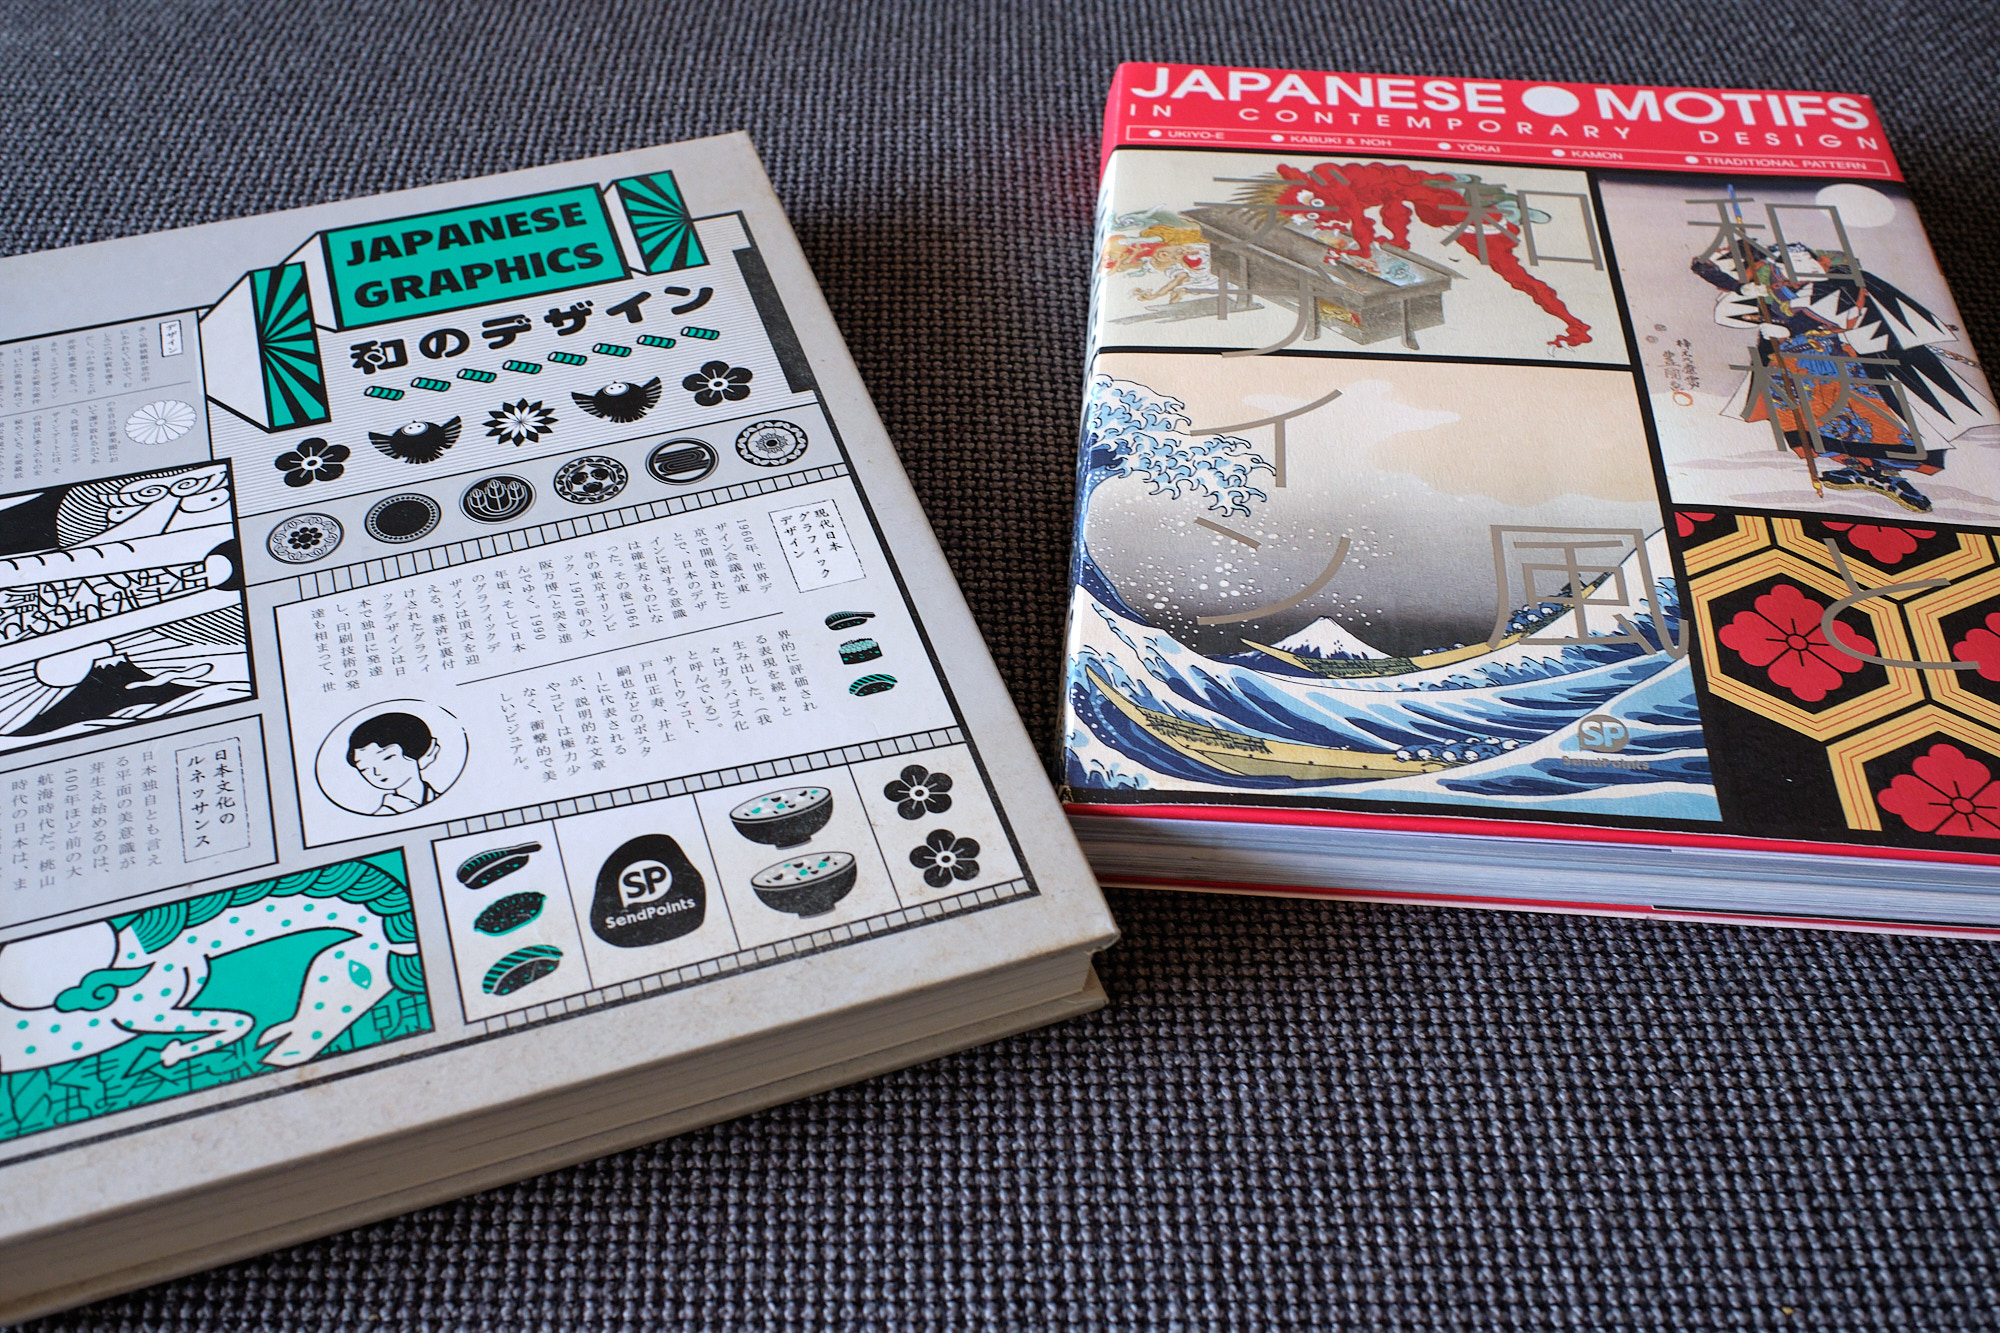 graphic design publications about Japan